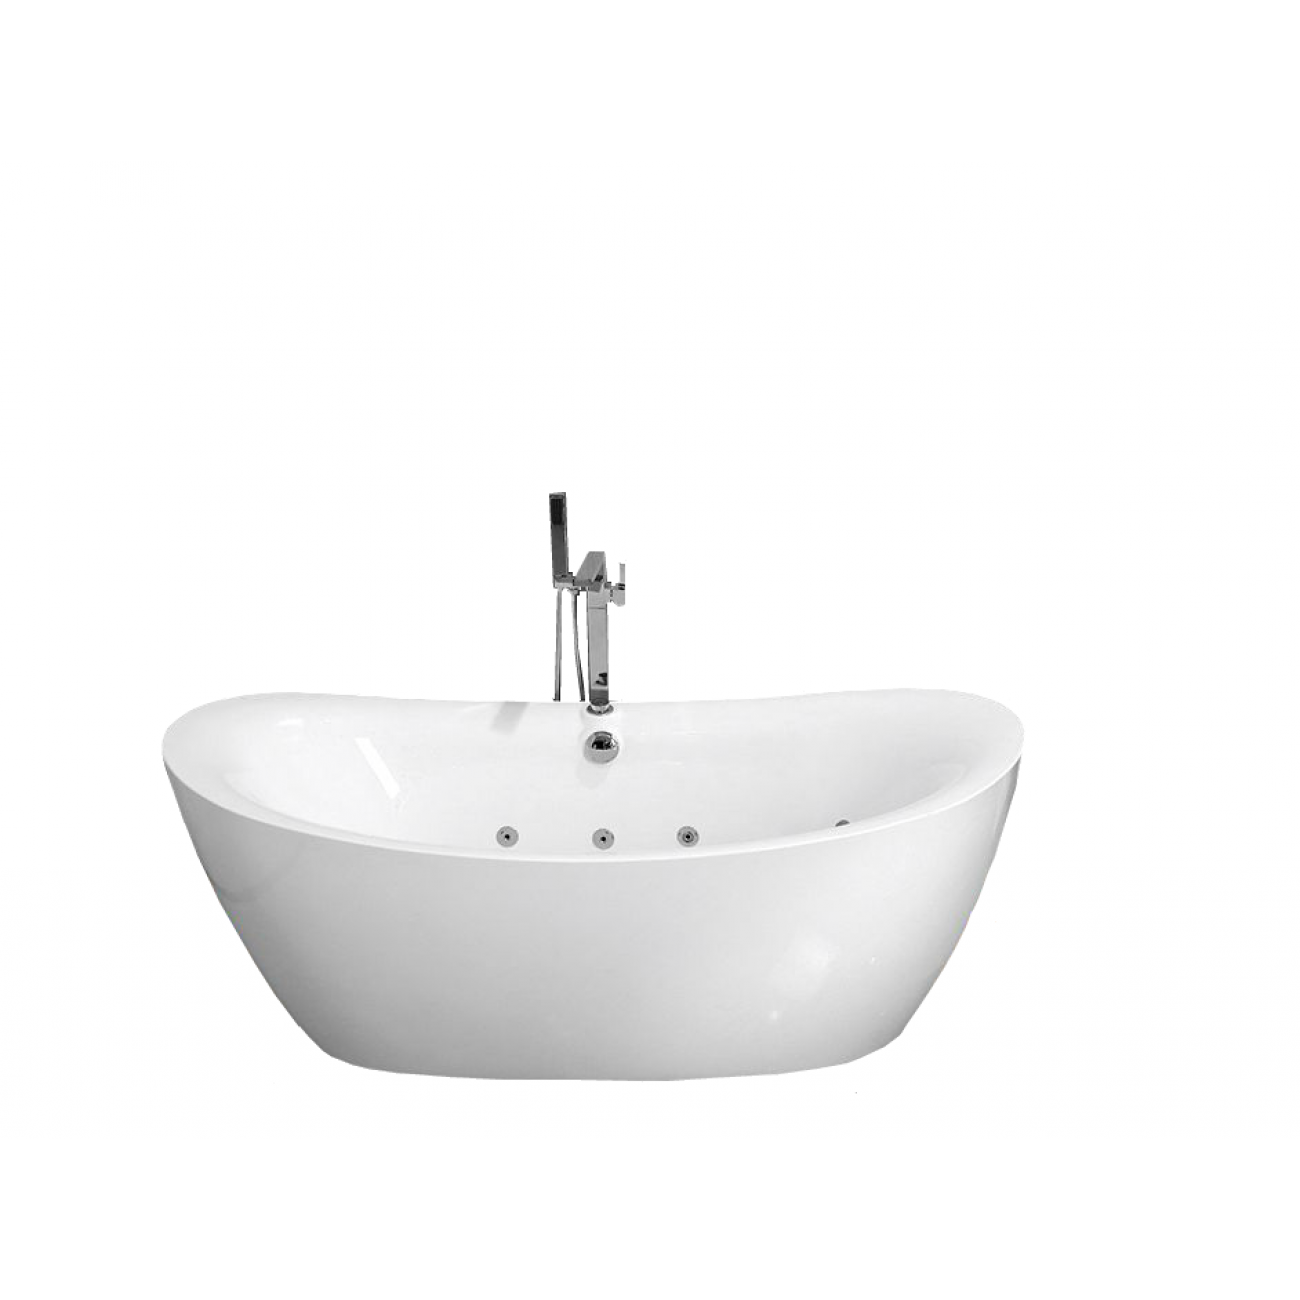 Гидромассажная ванна Frank 180x85 F162 отдельностоящая, белая, размер 180x85, цвет белый